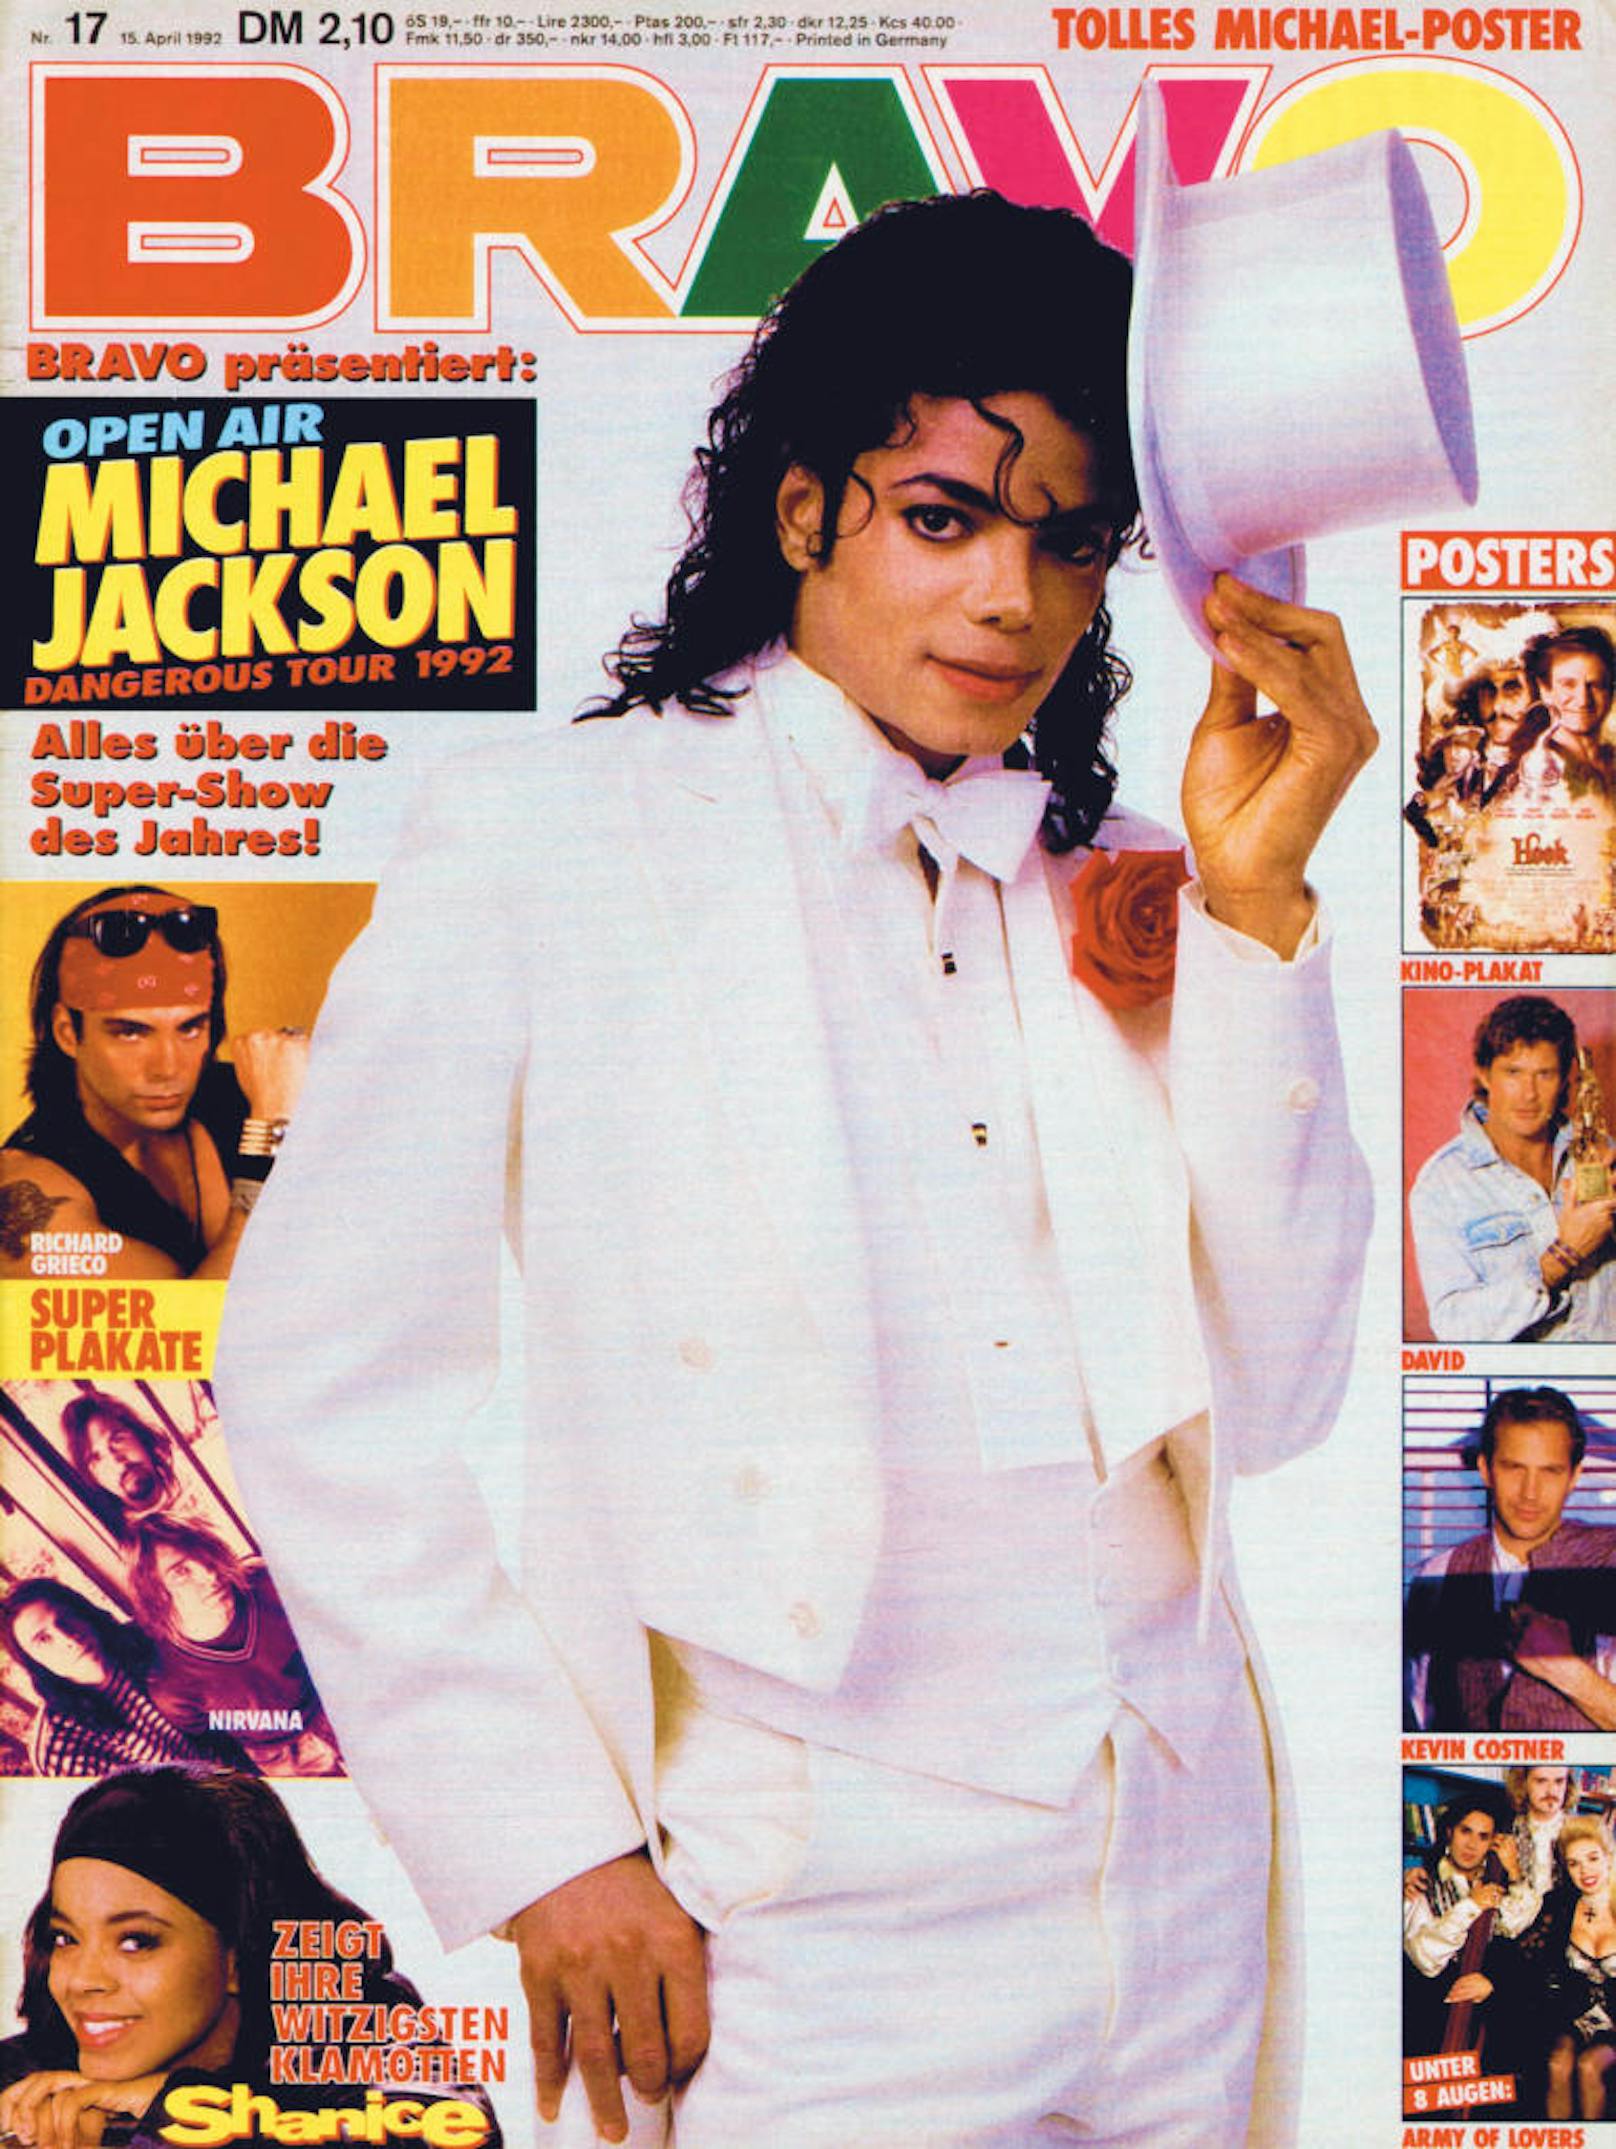 Der "King of Pop" Michael Jackson ganz in weiß (1993)